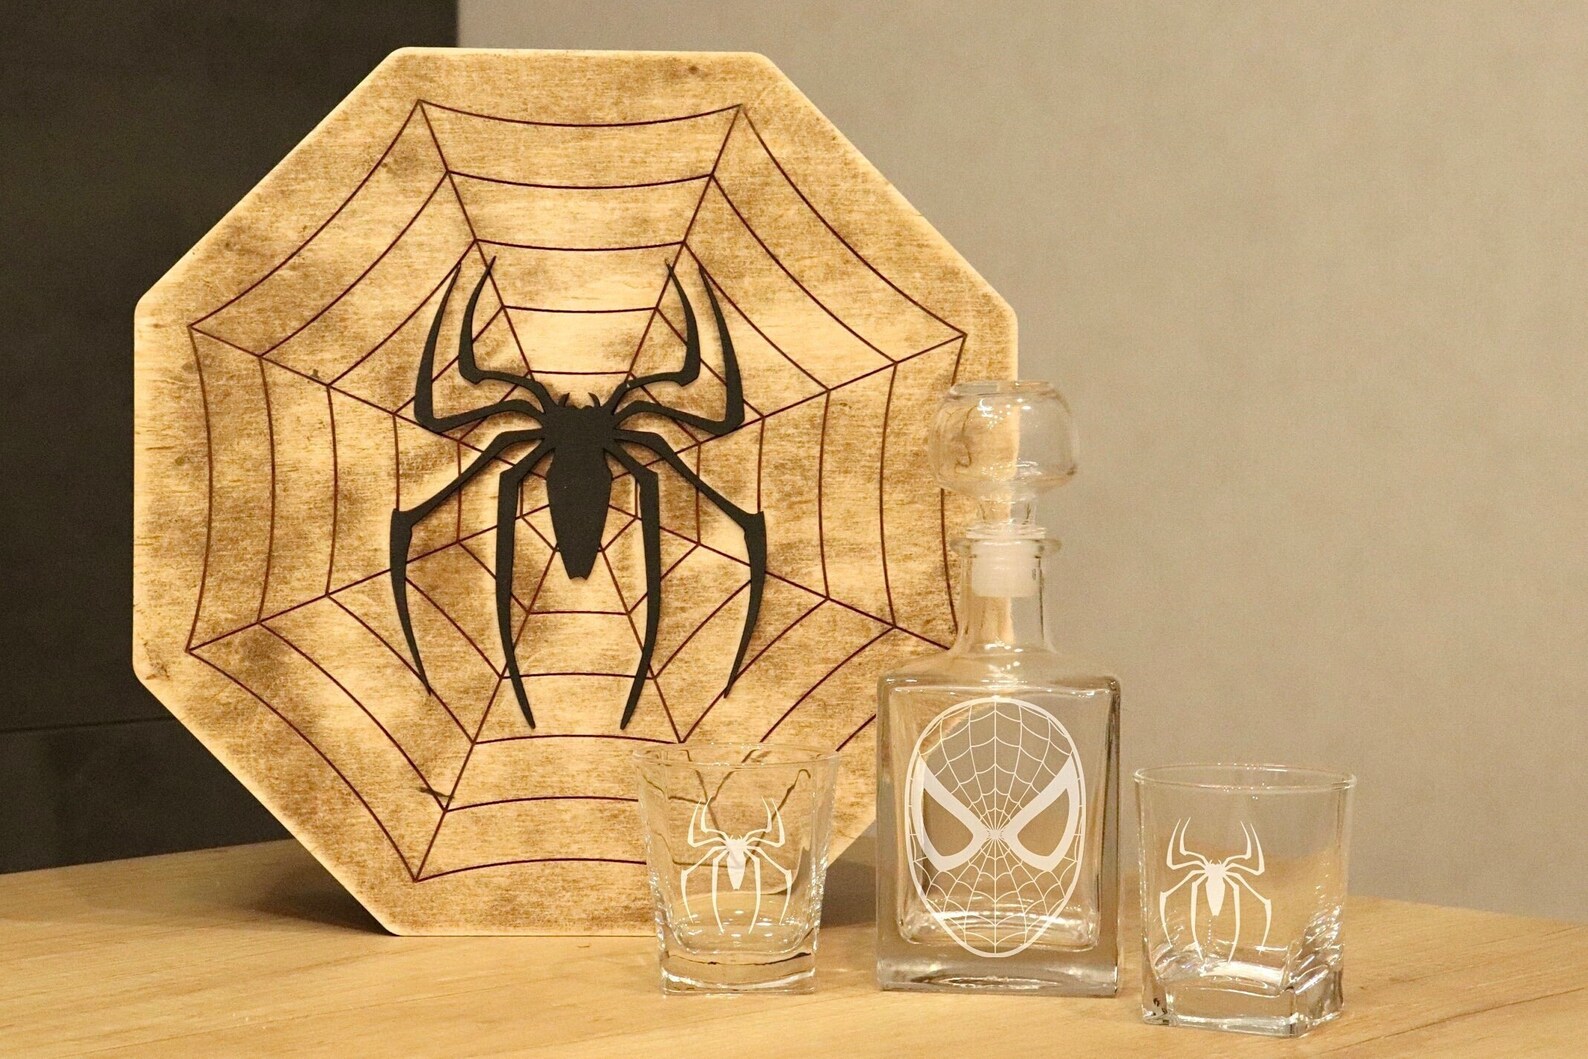 10. Spider-man Engraved Decanter Set